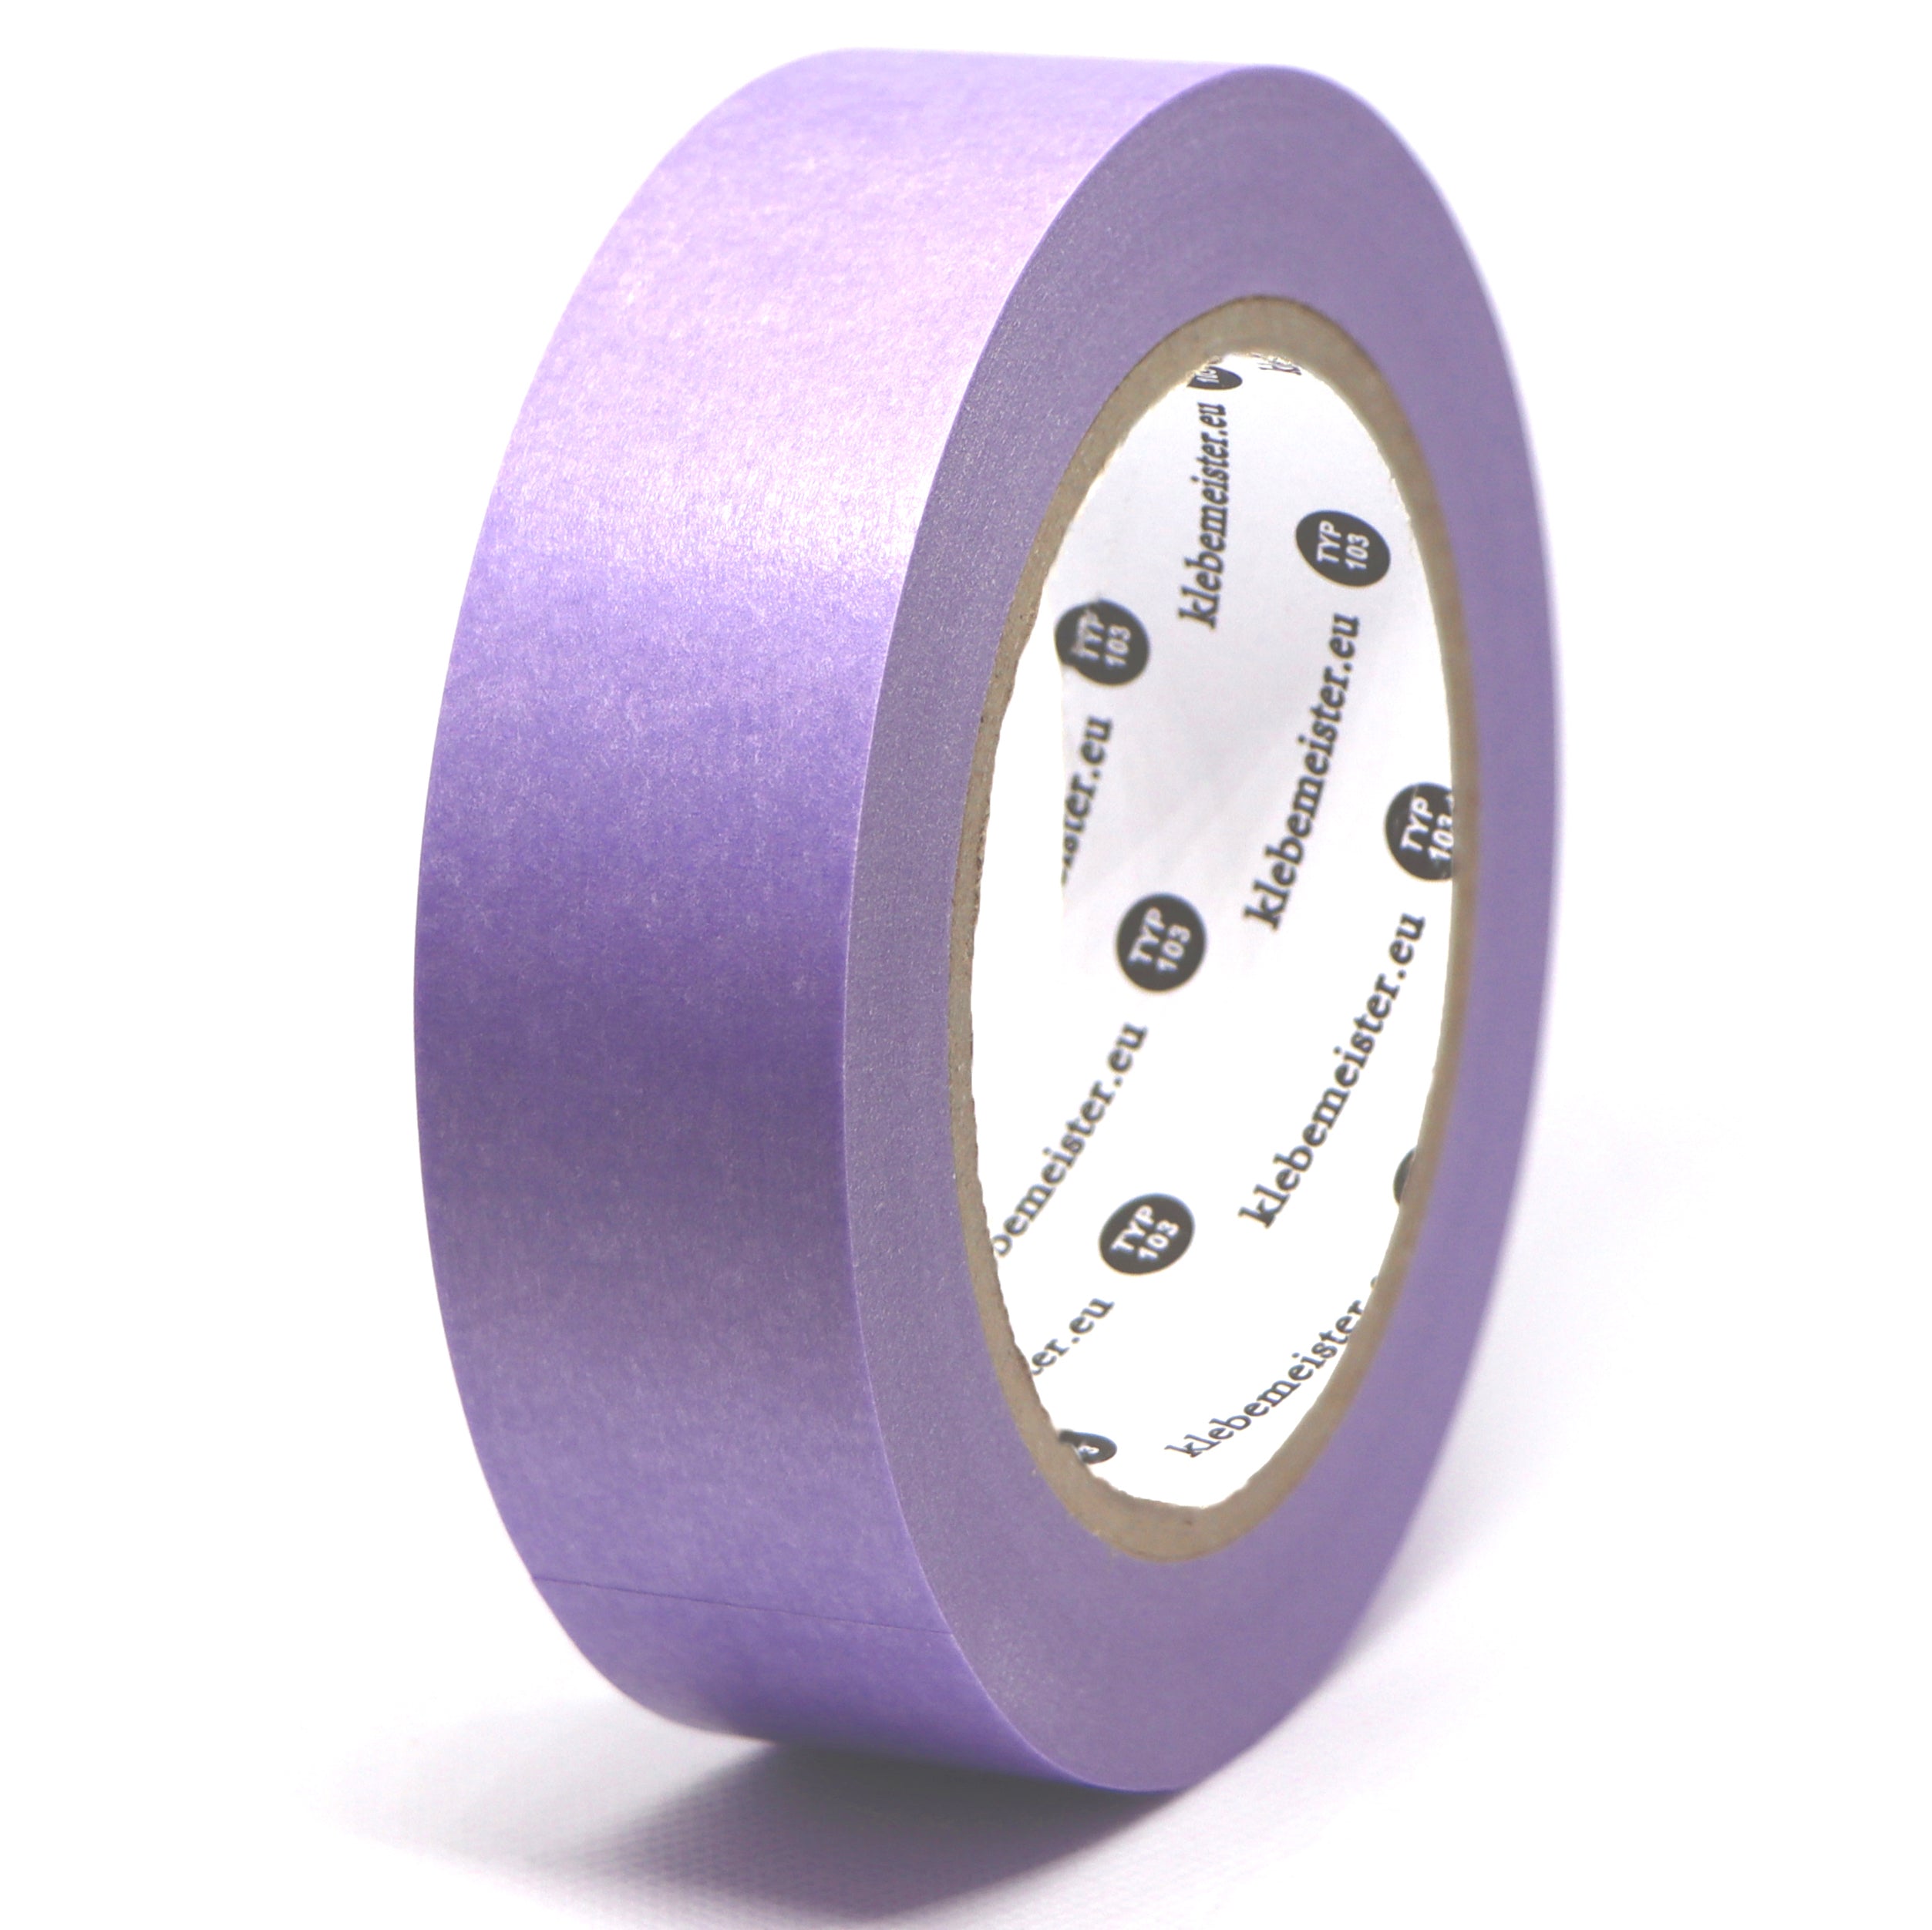 Soft Sensitive Abdeckband, lila, violett, für Maler und Lackierer 30mm x 50m